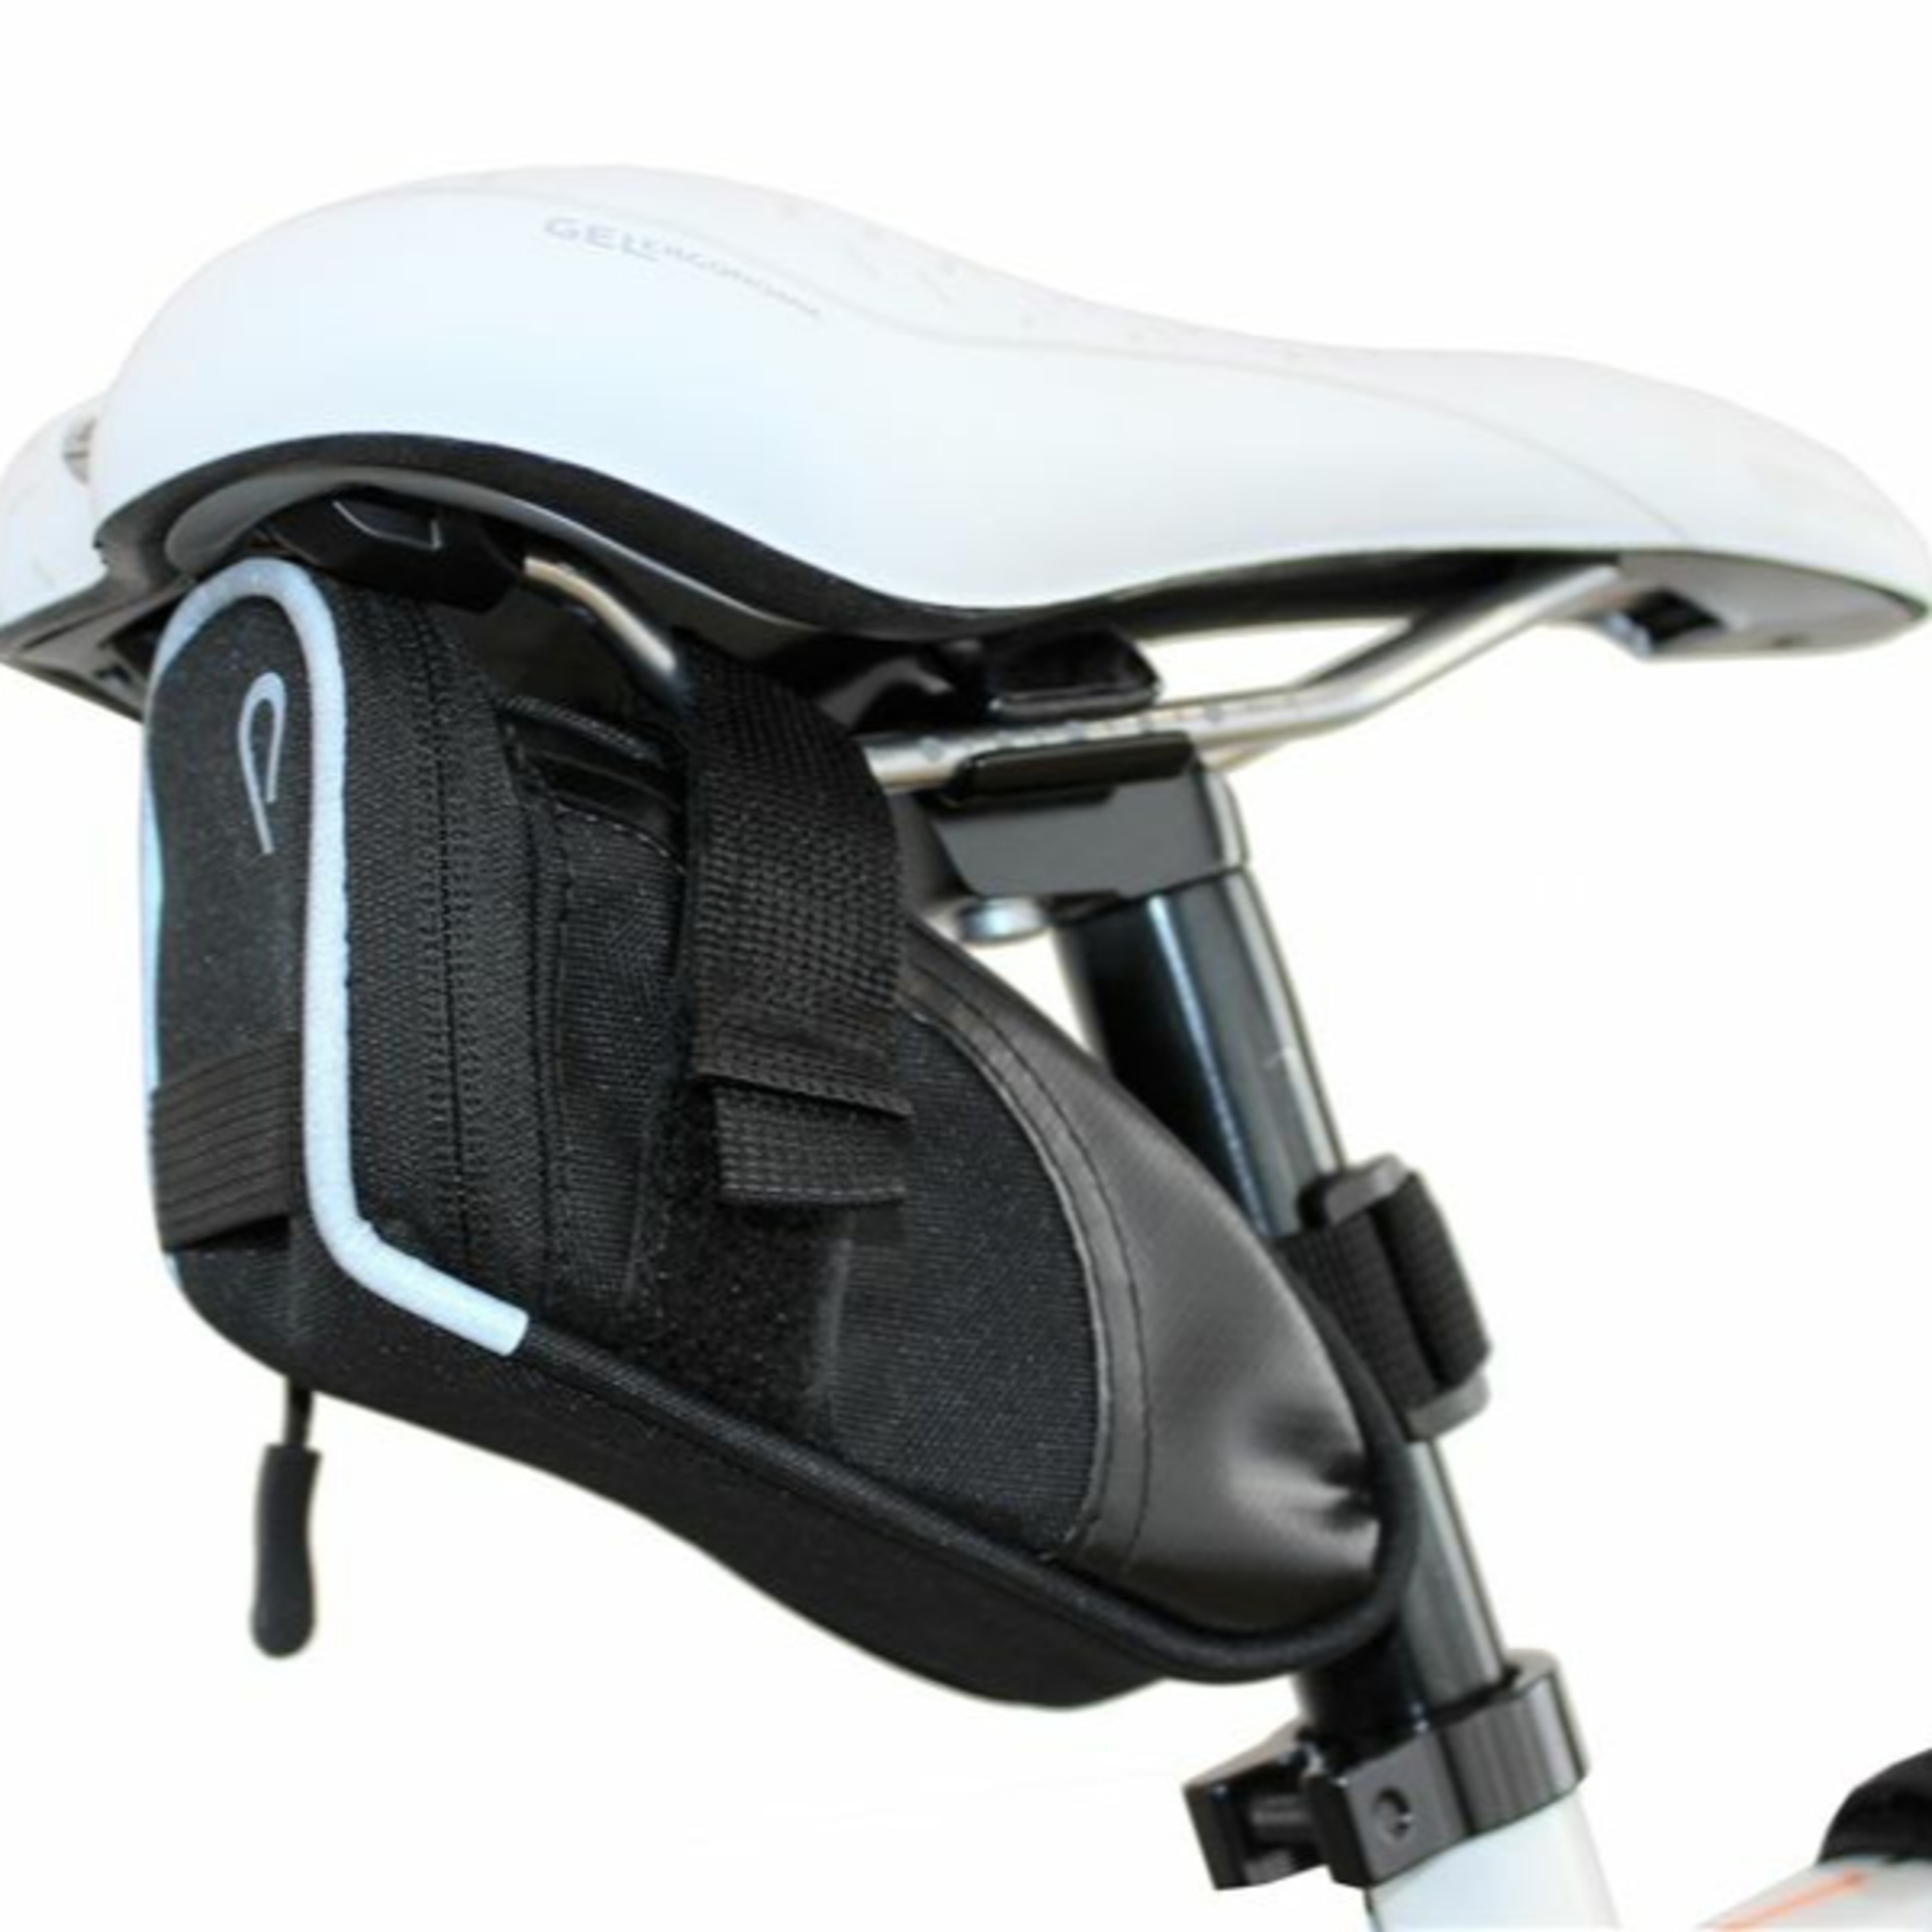 Bolsa Sillín Vincita Saddle Bag B034s - Negro - Bolsa Sillín Vincita Saddle Bag  MKP